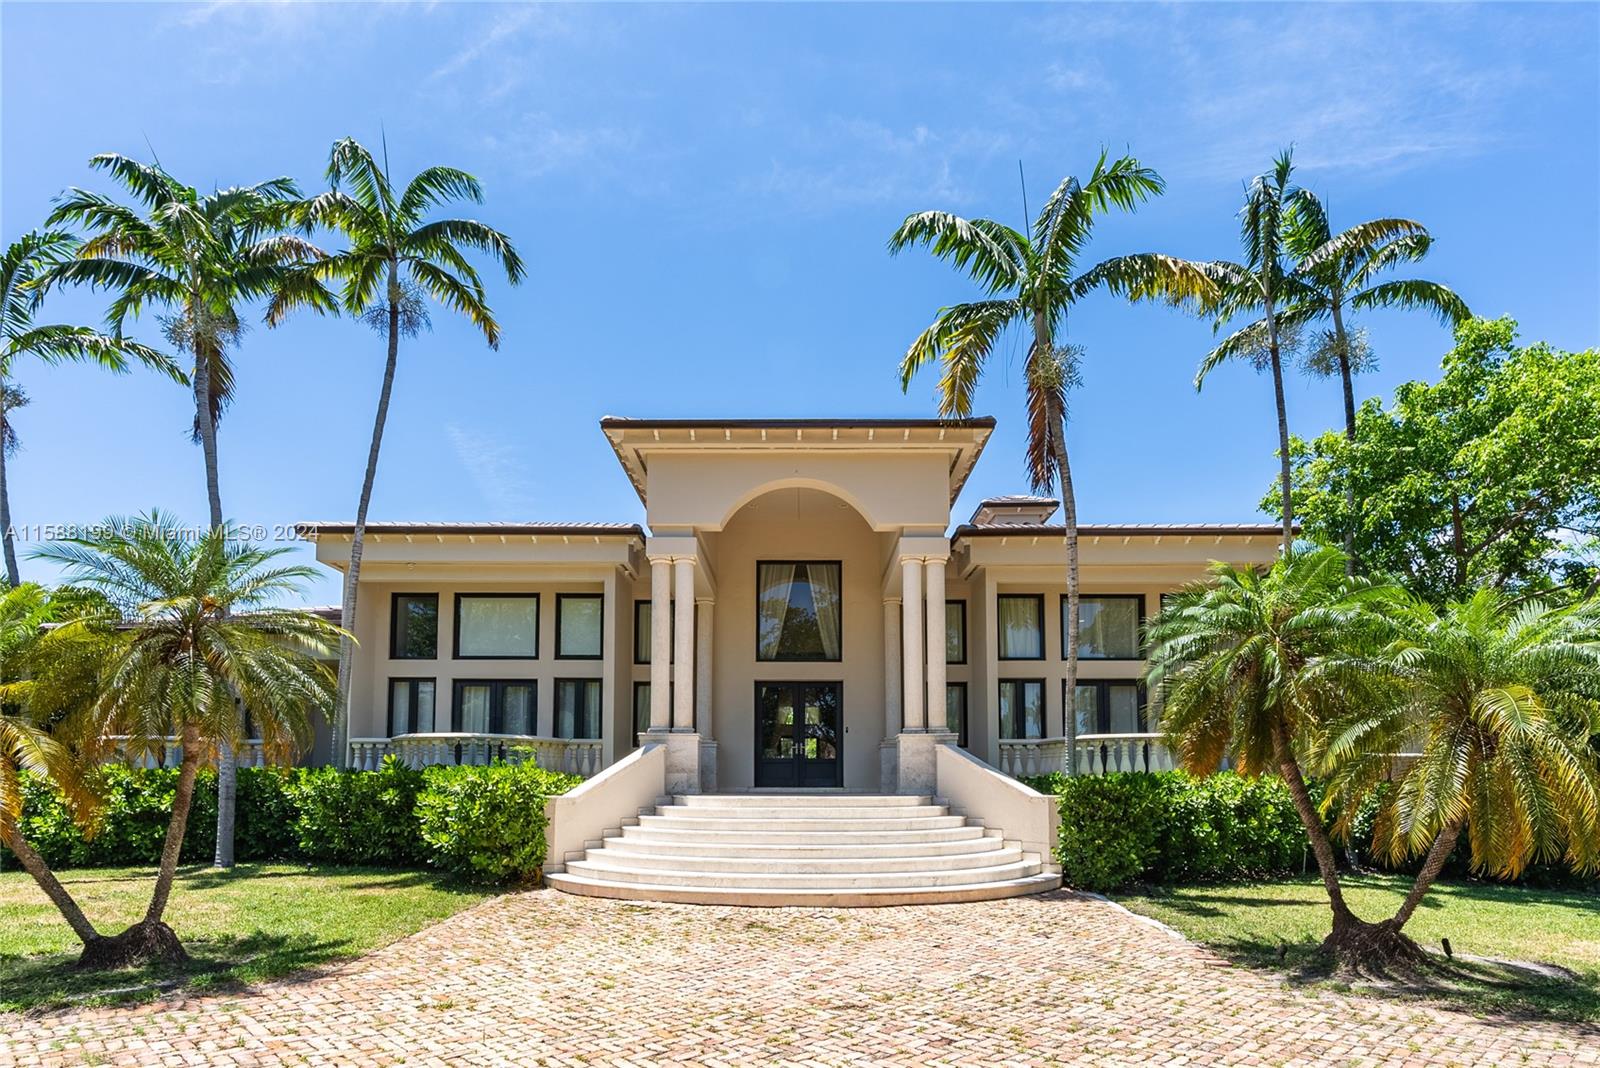 Property for Sale at 8112 Los Pinos Cir, Coral Gables, Broward County, Florida - Bedrooms: 6 
Bathrooms: 7  - $9,395,000